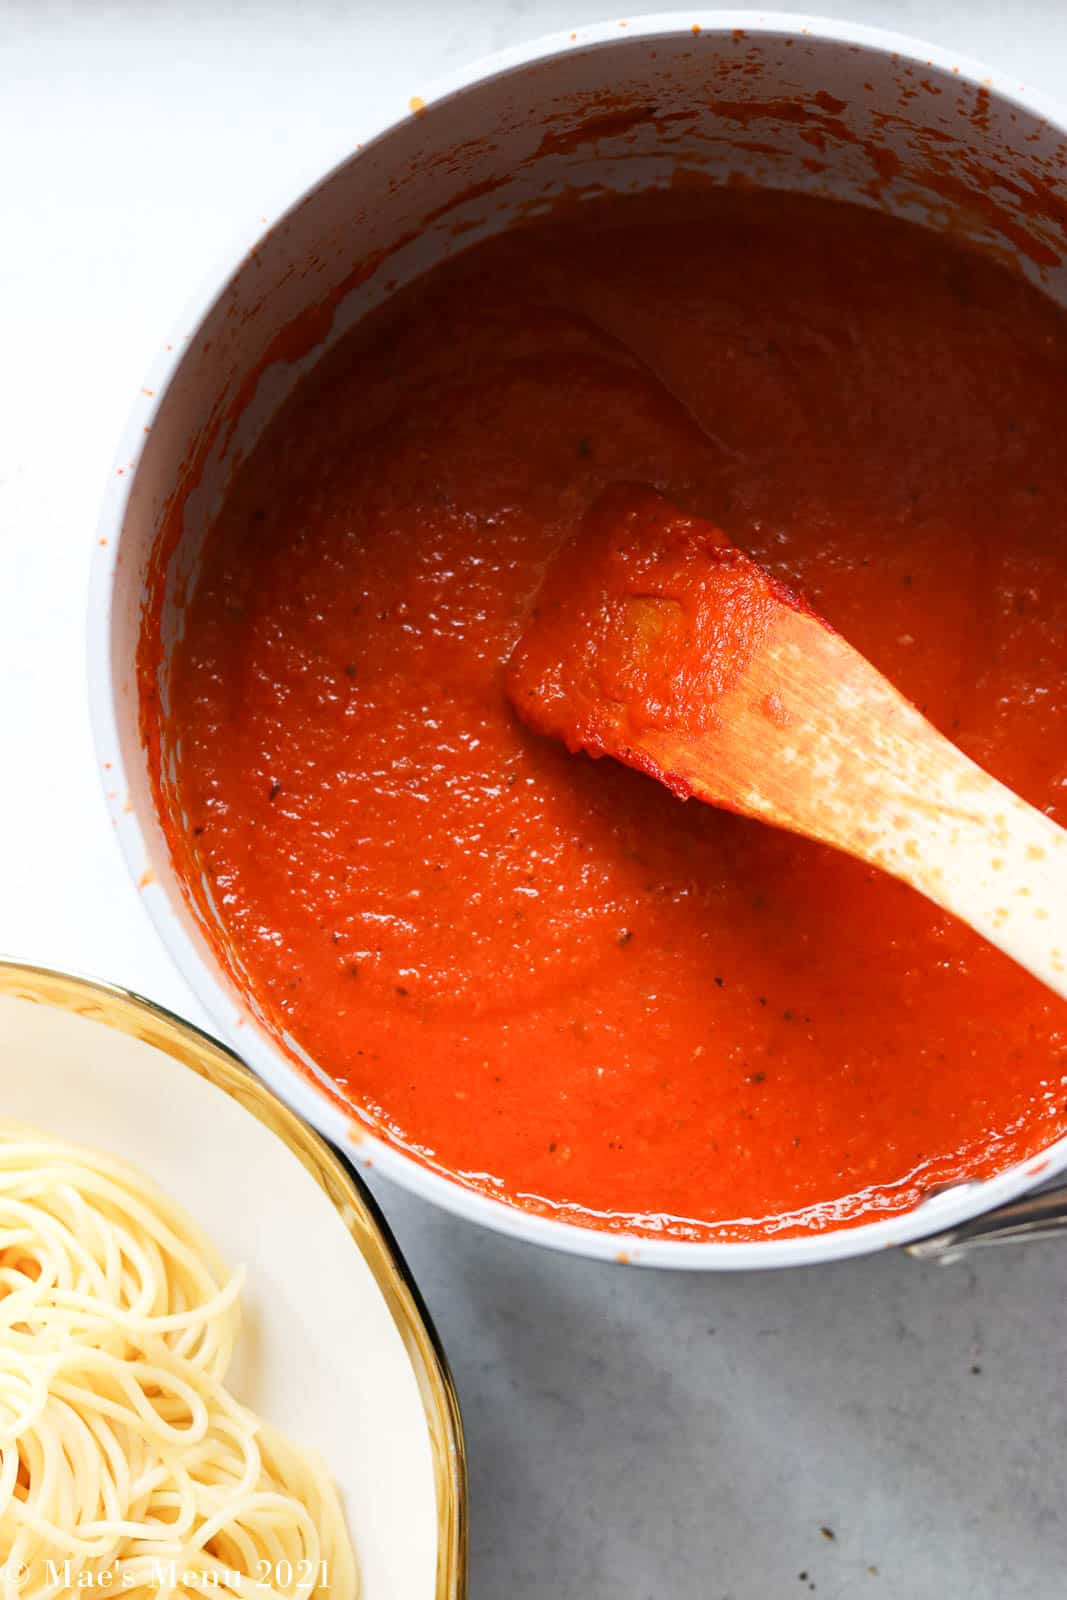 An overhead shot of a saucepan of marinara sauce next to a bowl of pasta